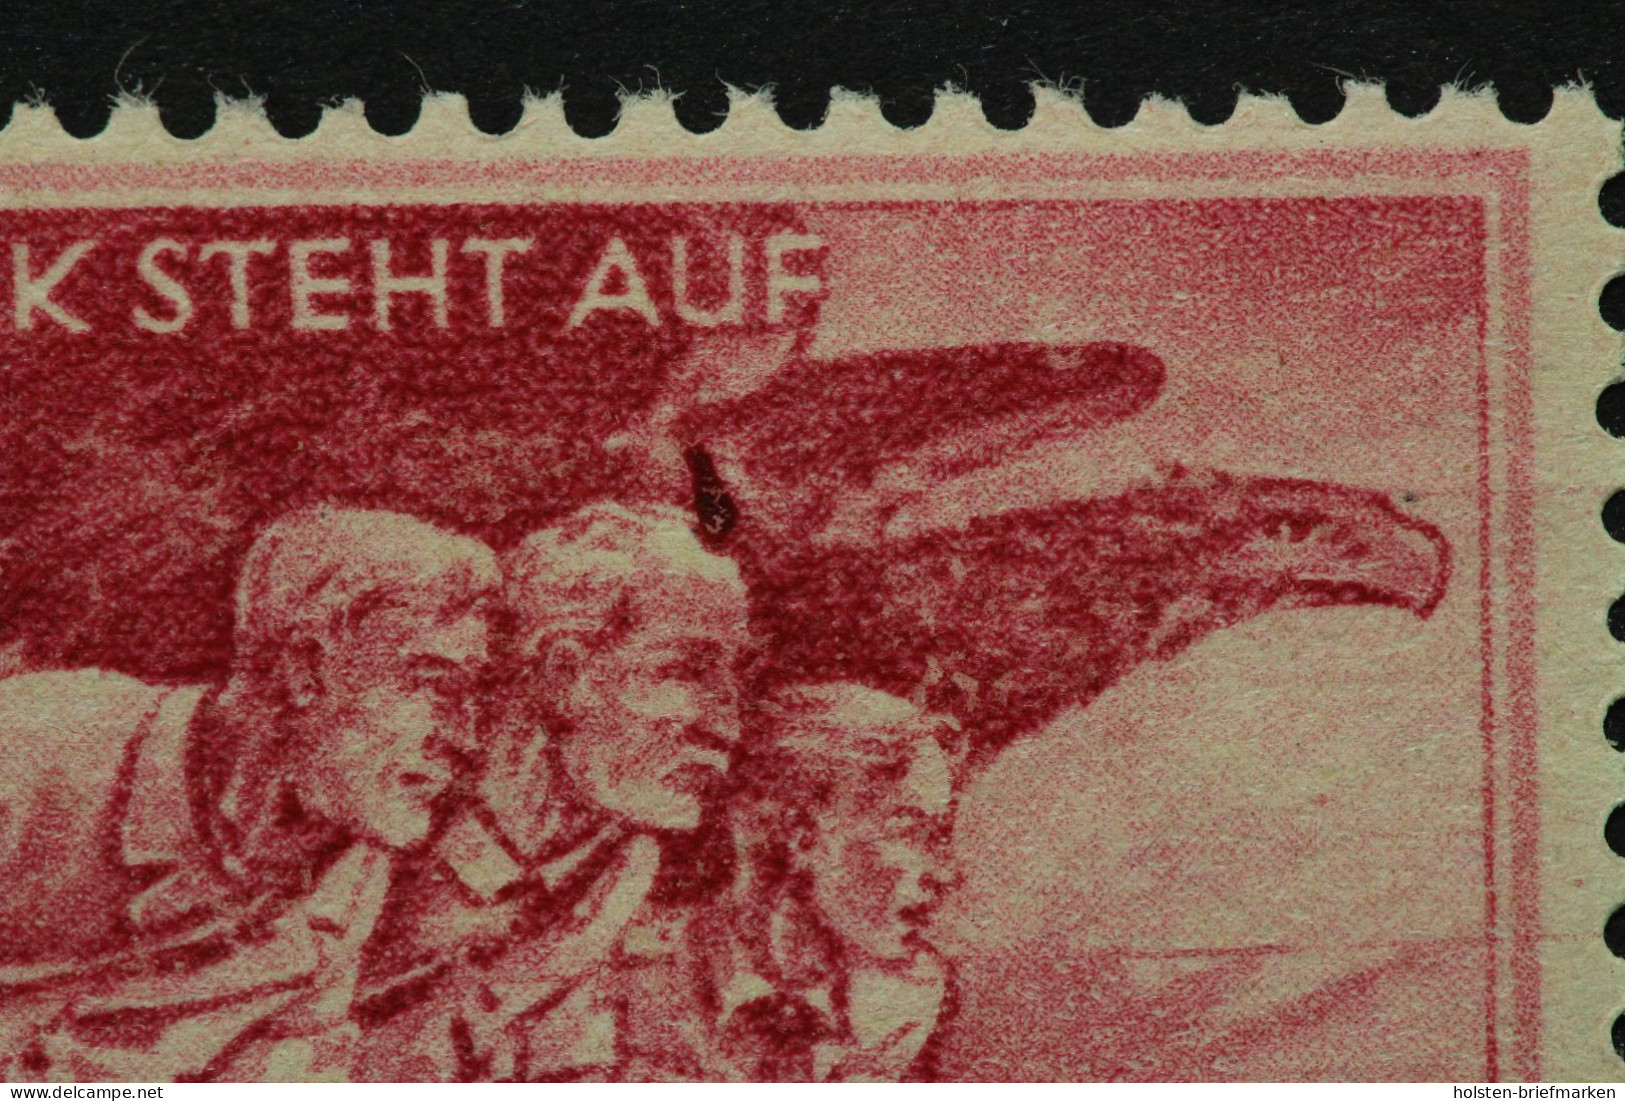 Deutsches Reich, MiNr. 908 PF VI, Postfrisch, Altsignatur - Abarten & Kuriositäten